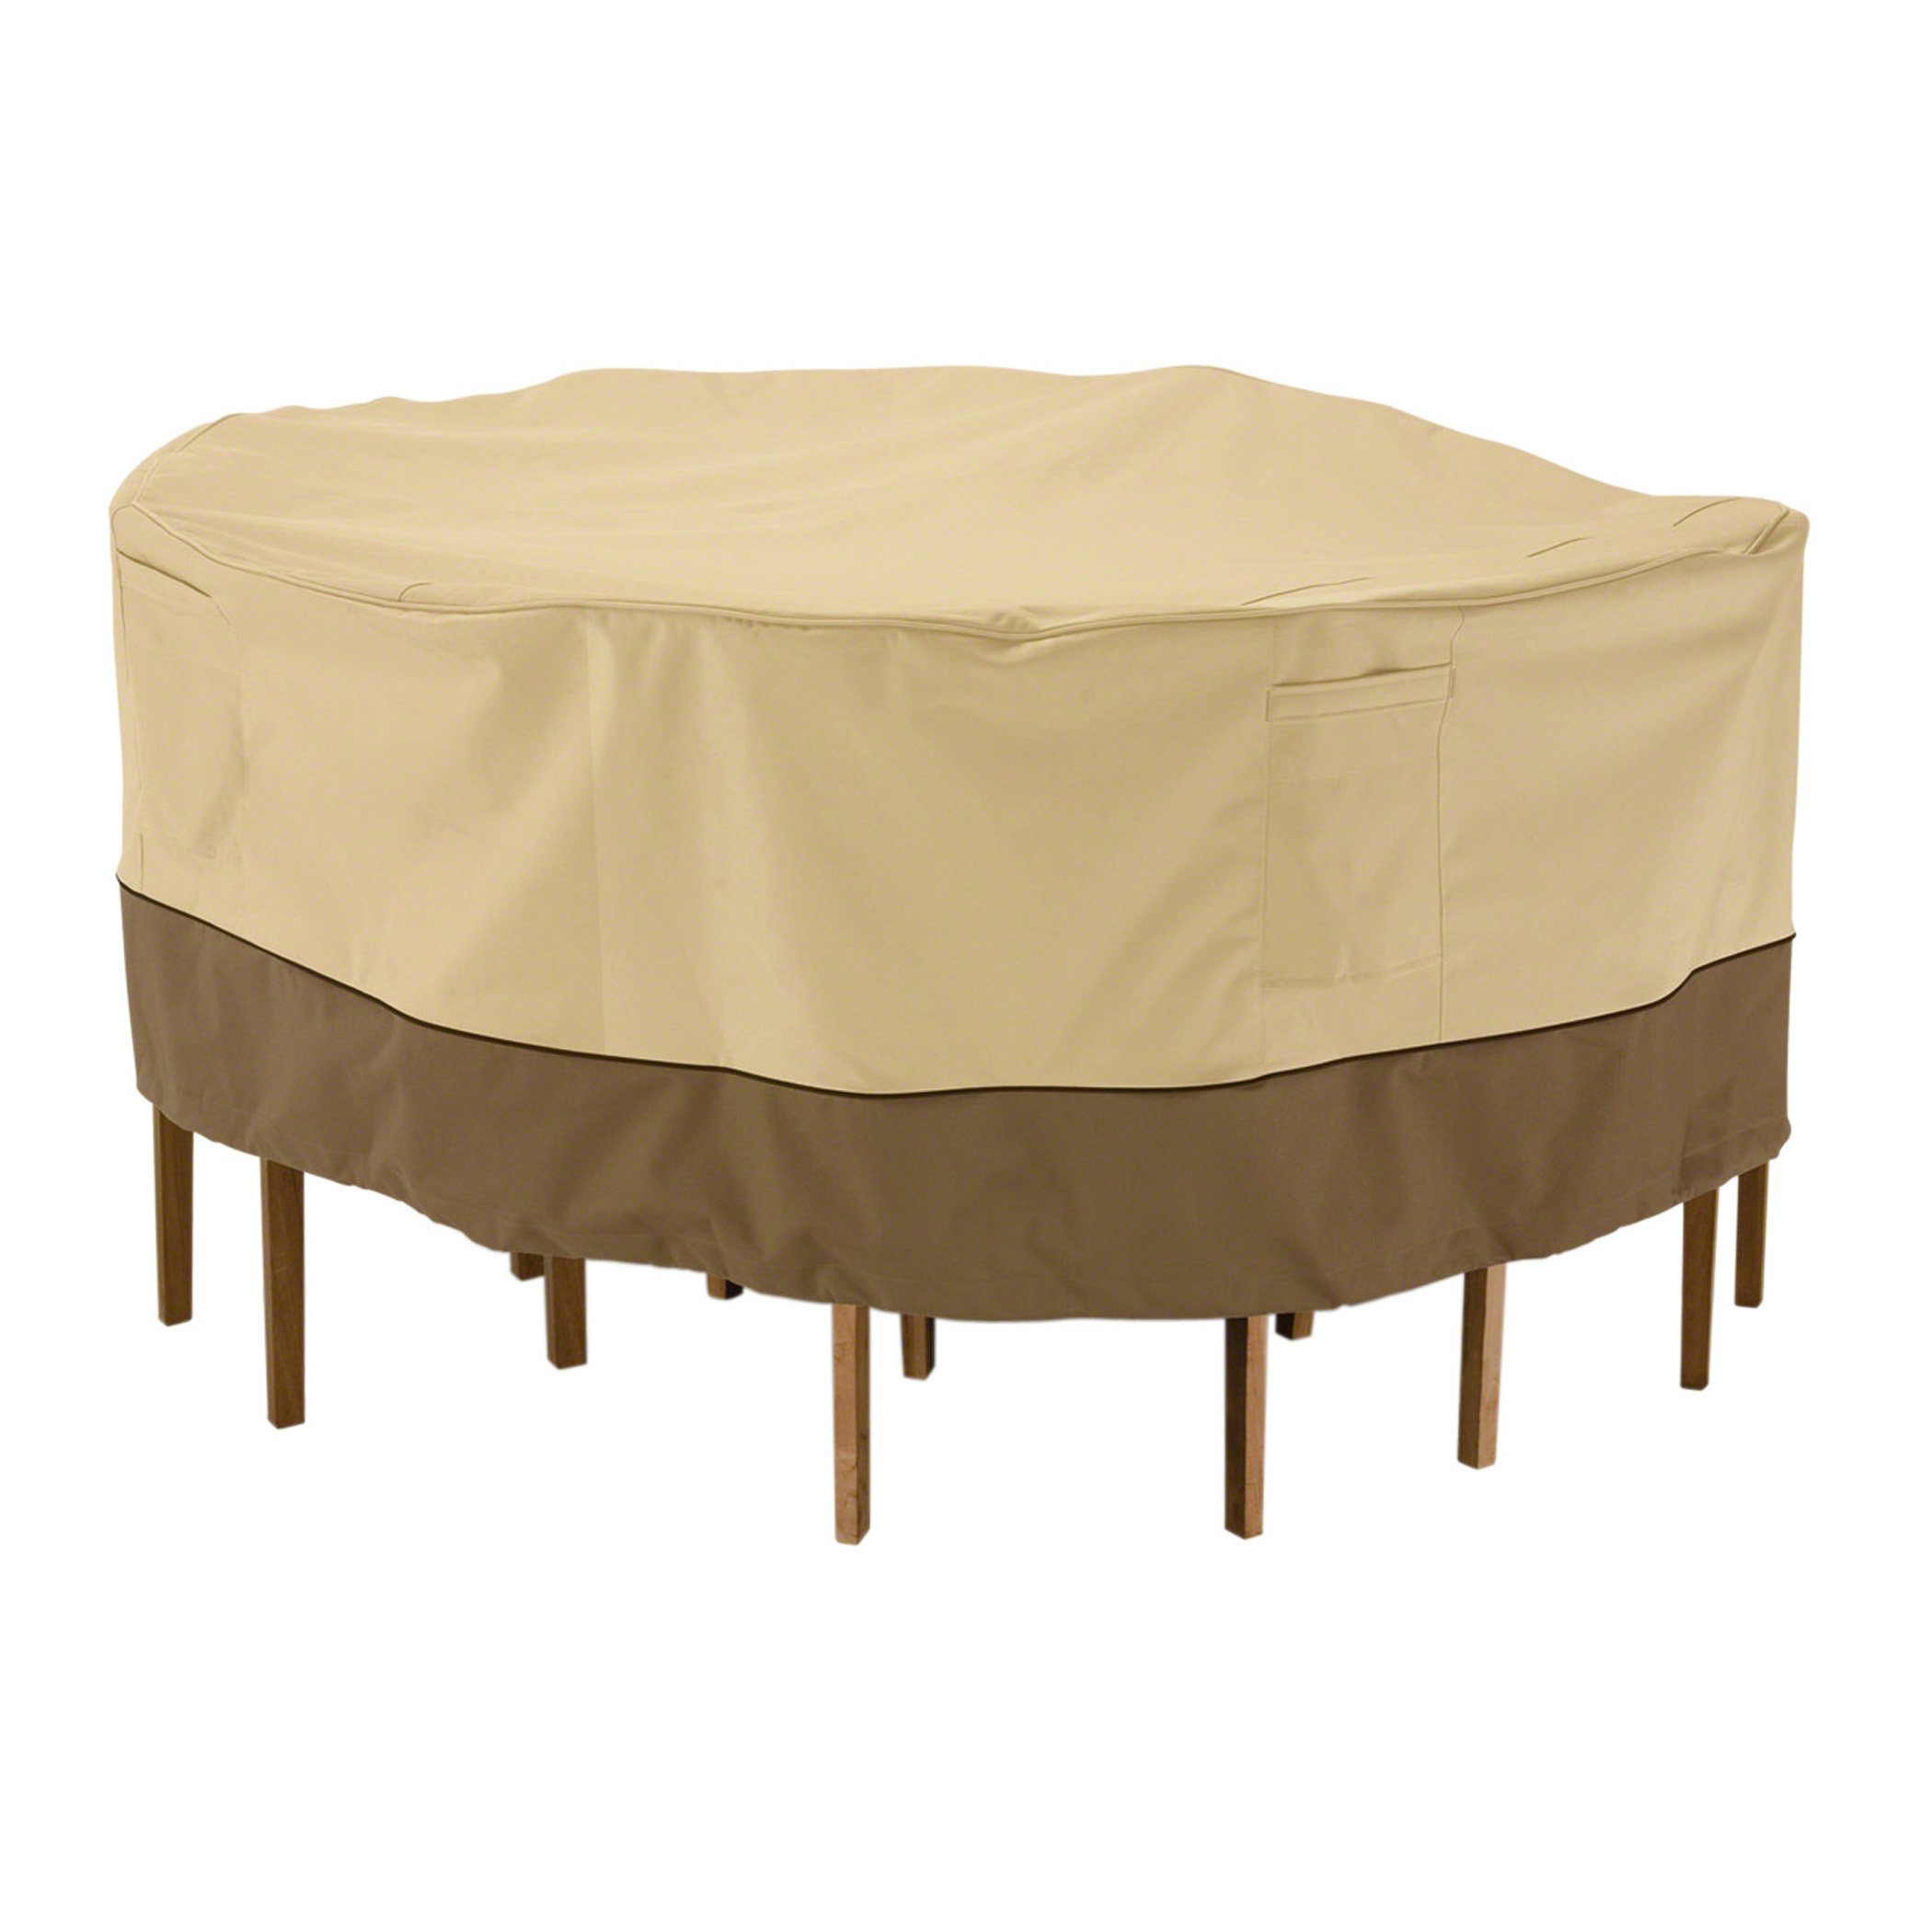 Classic Accessories Veranda wasserabweisende Abdeckung für rundes Gartentisch & Stühle-Set, Pebble/Bark/Earth (238cm, groß)